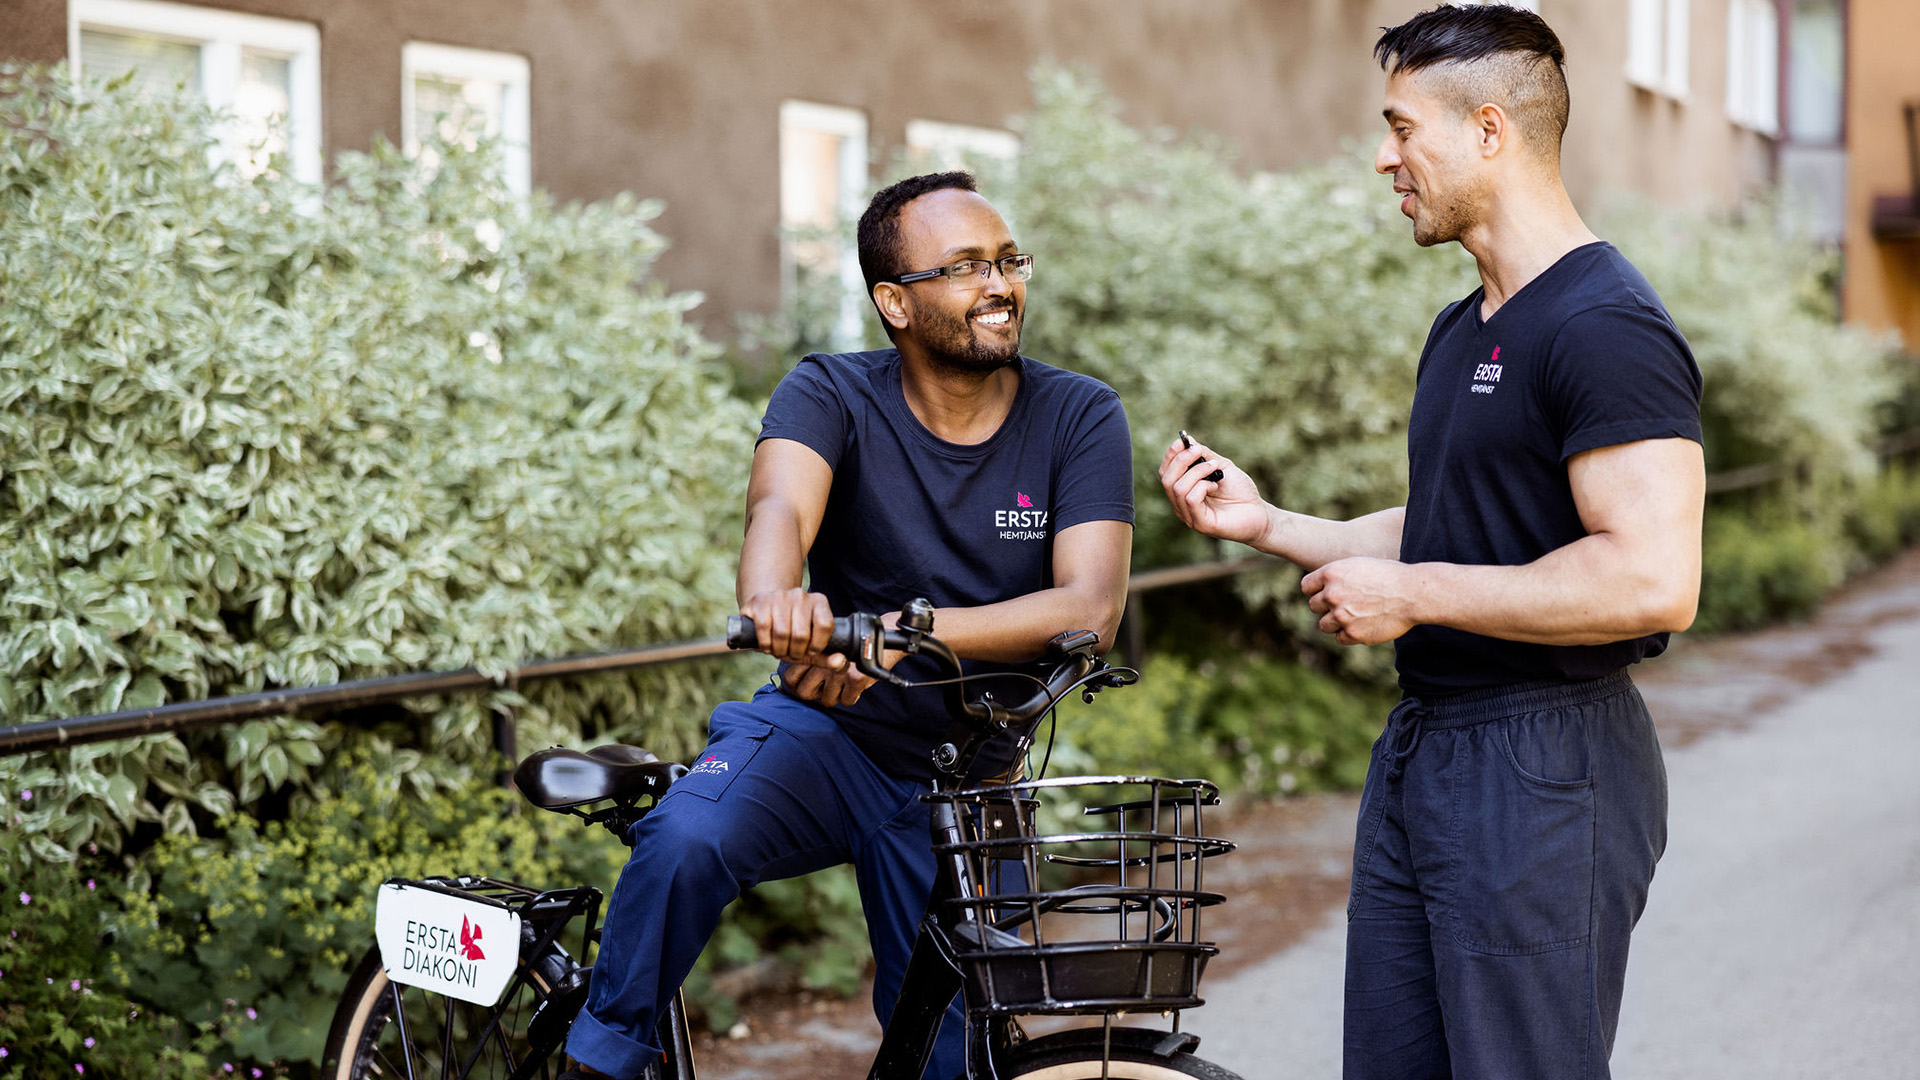 två merbetare från ersta hemtjänst står vid en cykel och pratar